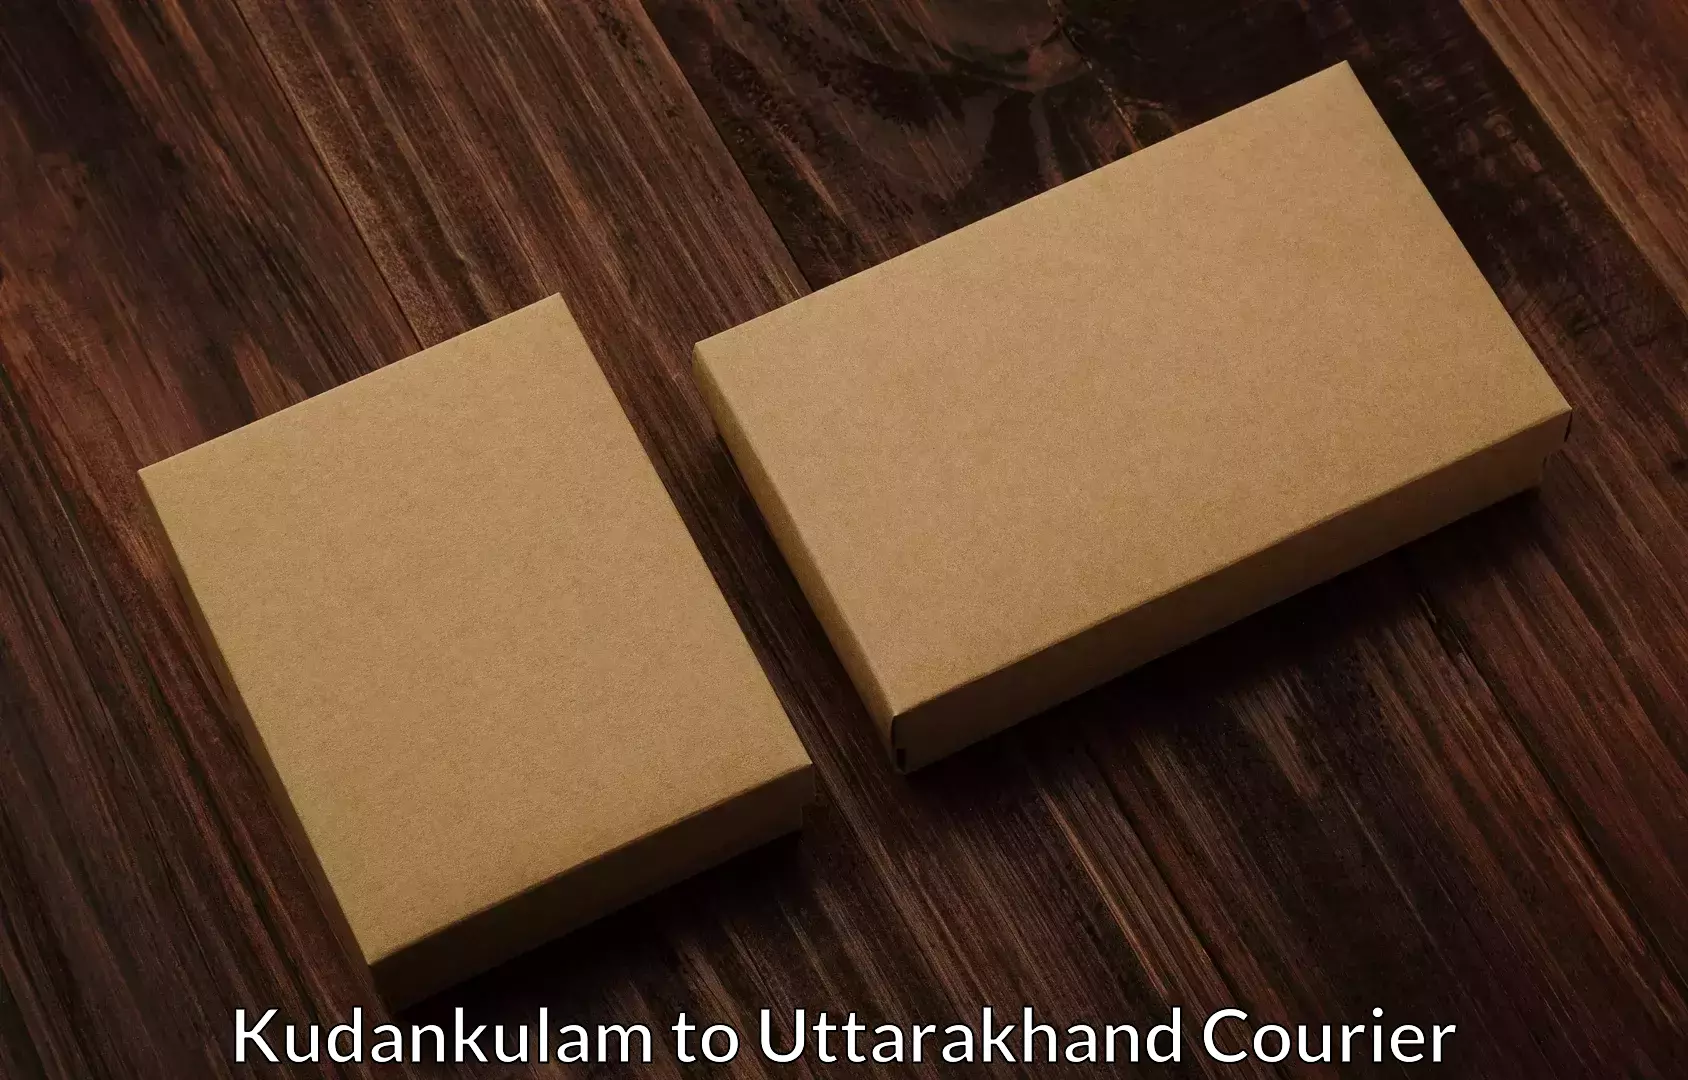 Personalized moving service Kudankulam to Pauri